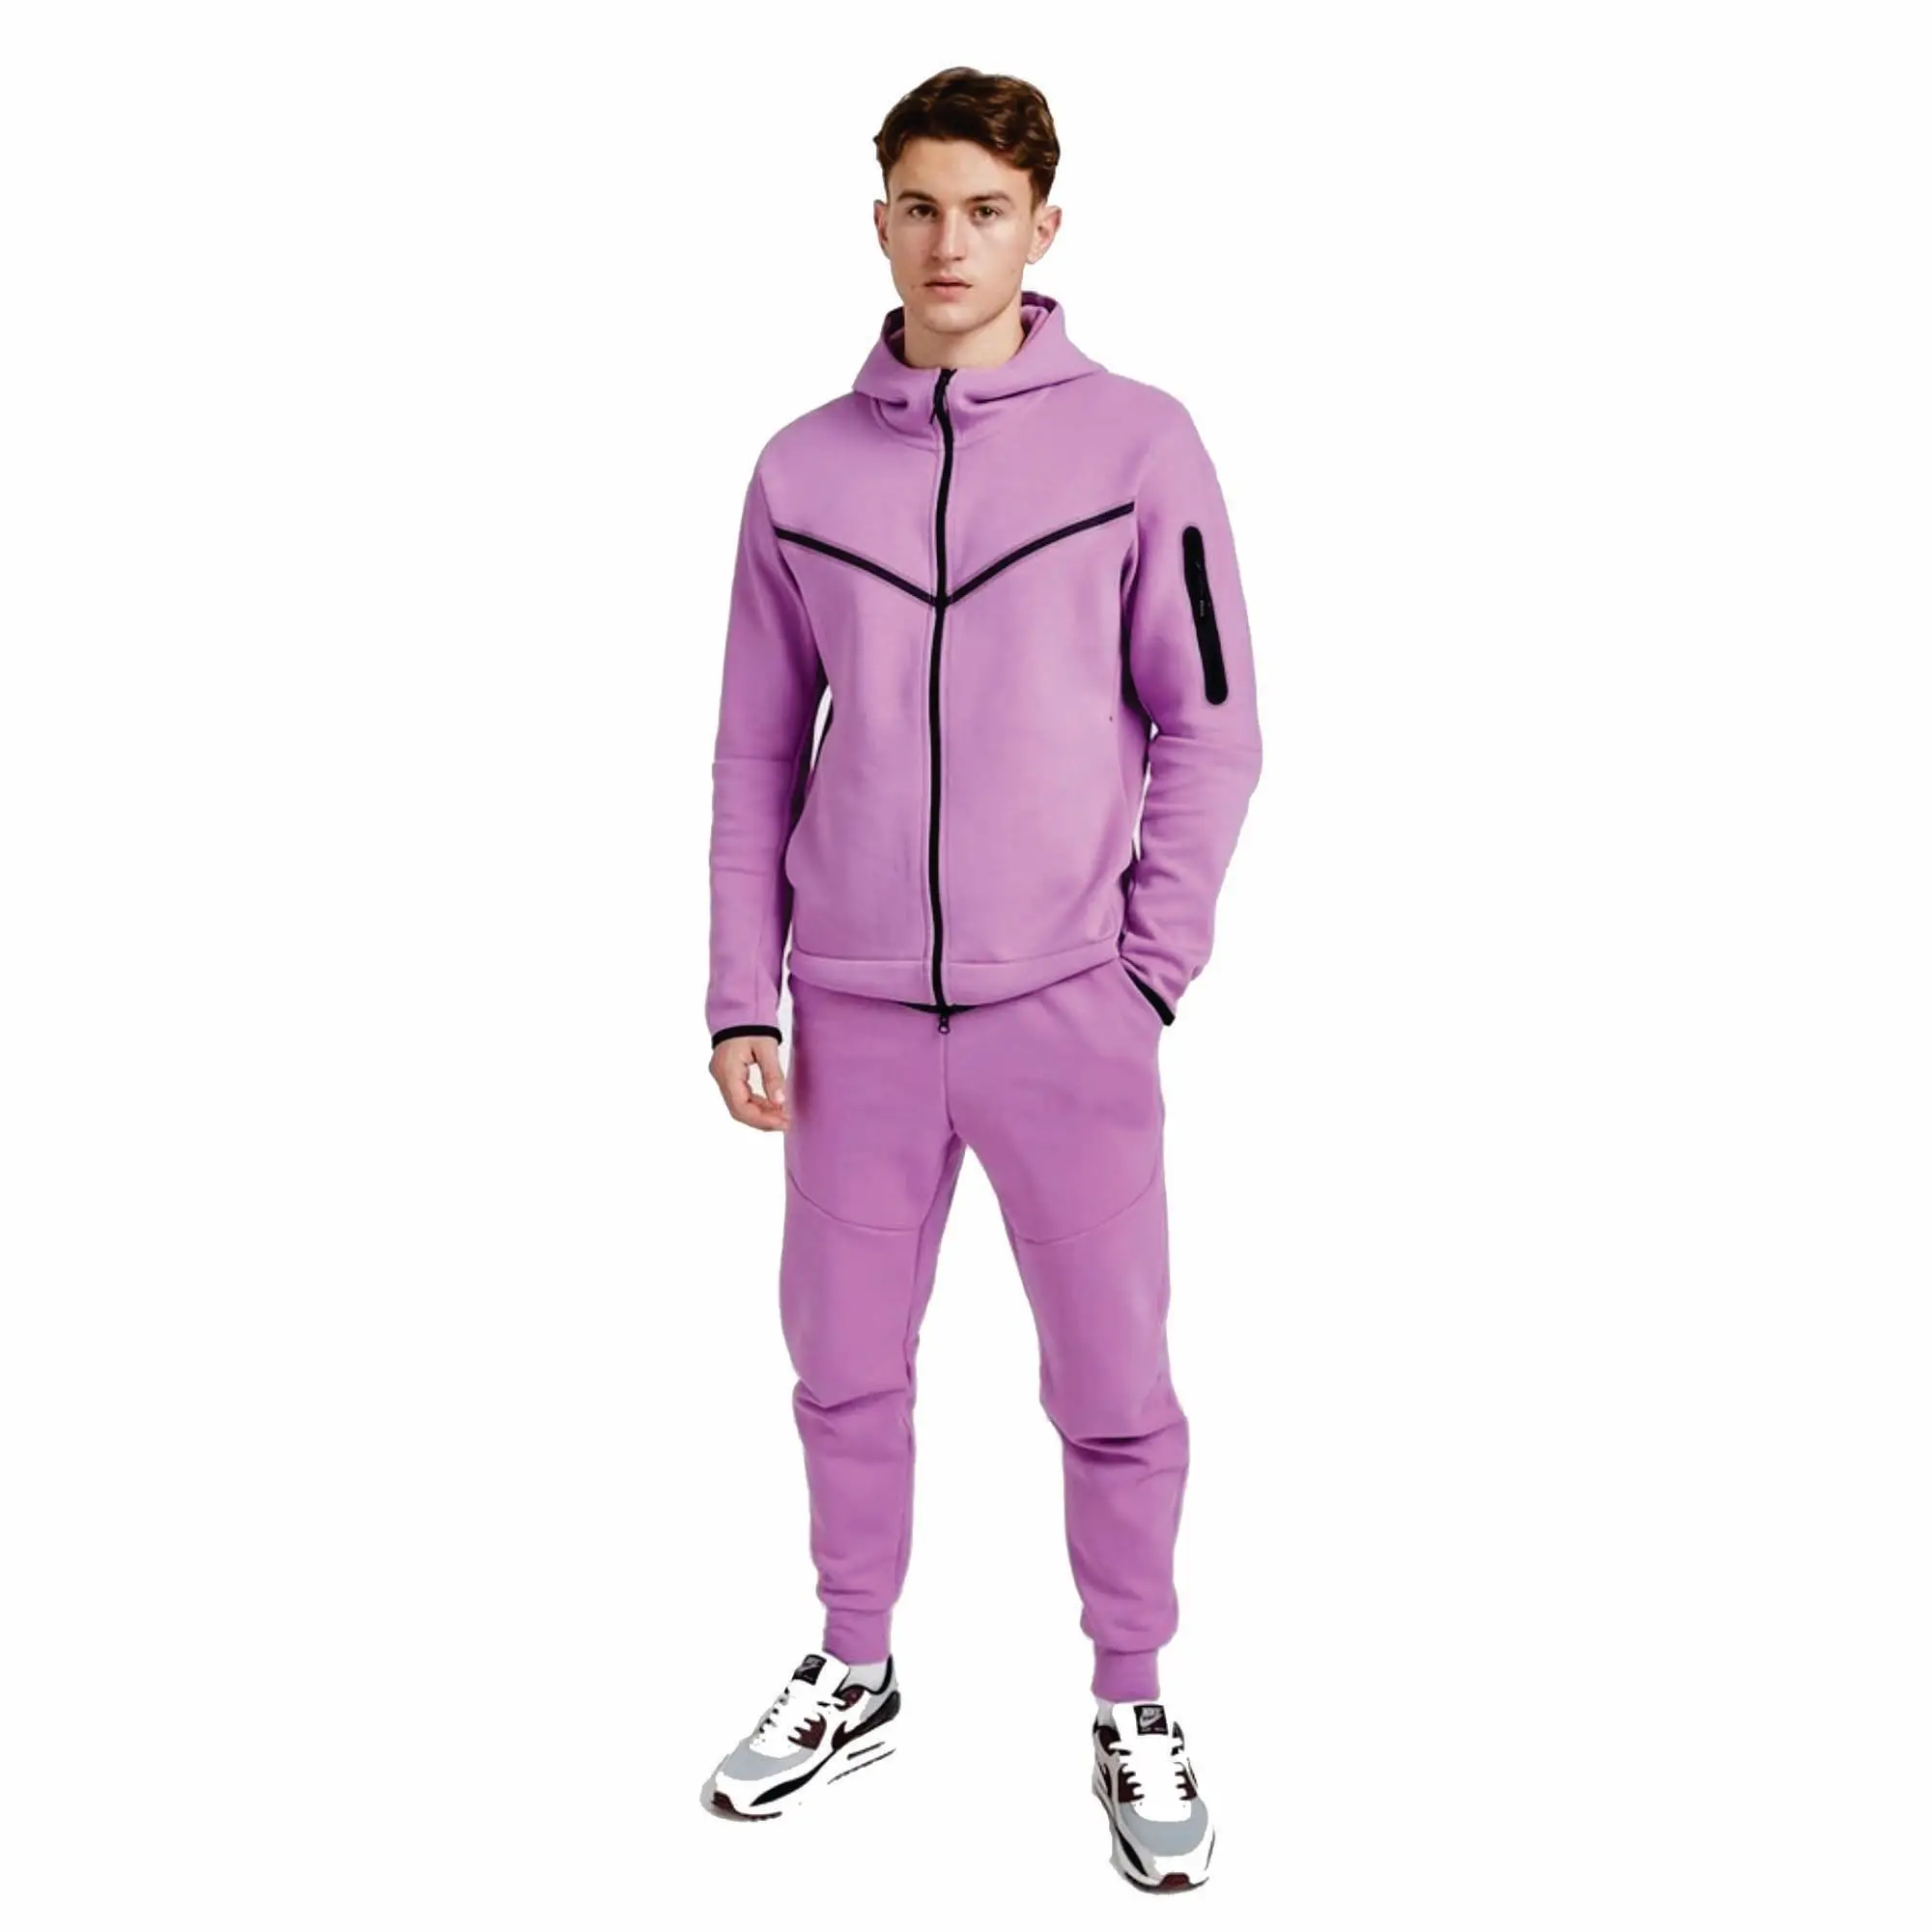 OEM Design 69% cotone 31% poliestere rosa uomo Tech Fleece tuta Full Zip felpa con cappuccio pantaloni sportivi tuta